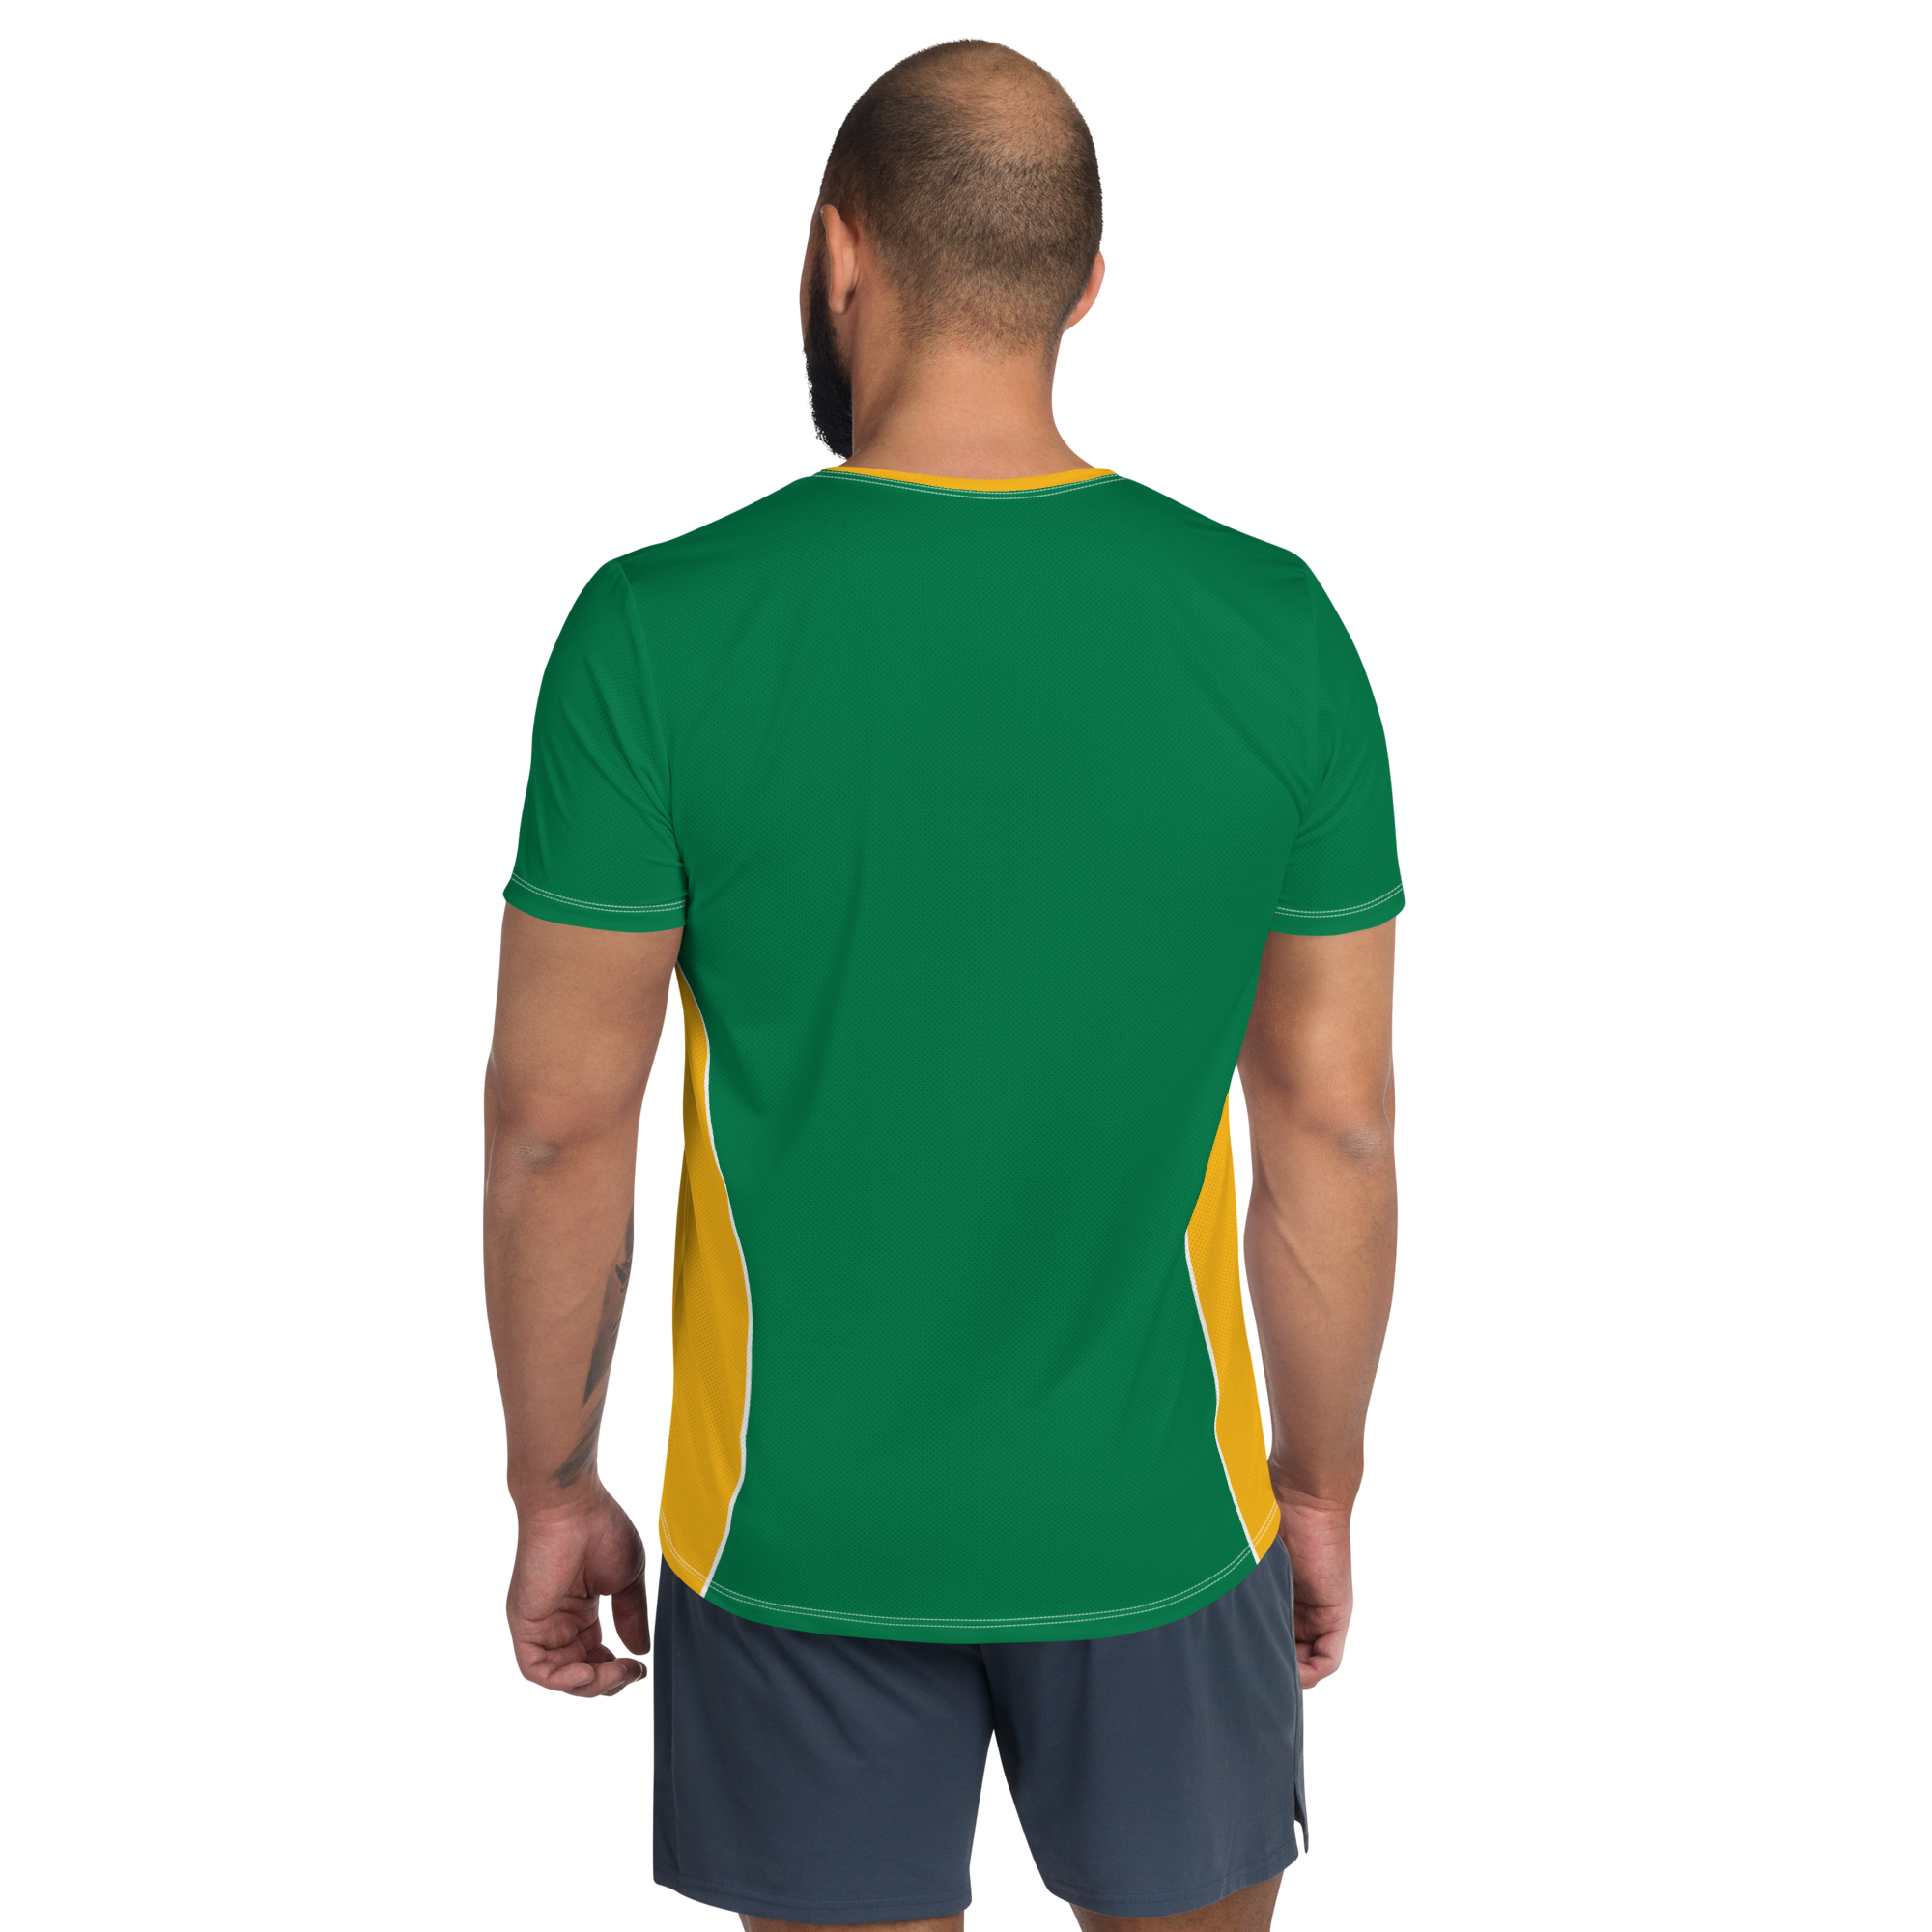 Sping Bouk T-shirt de Sport Pour Homme, Imprimé All Over